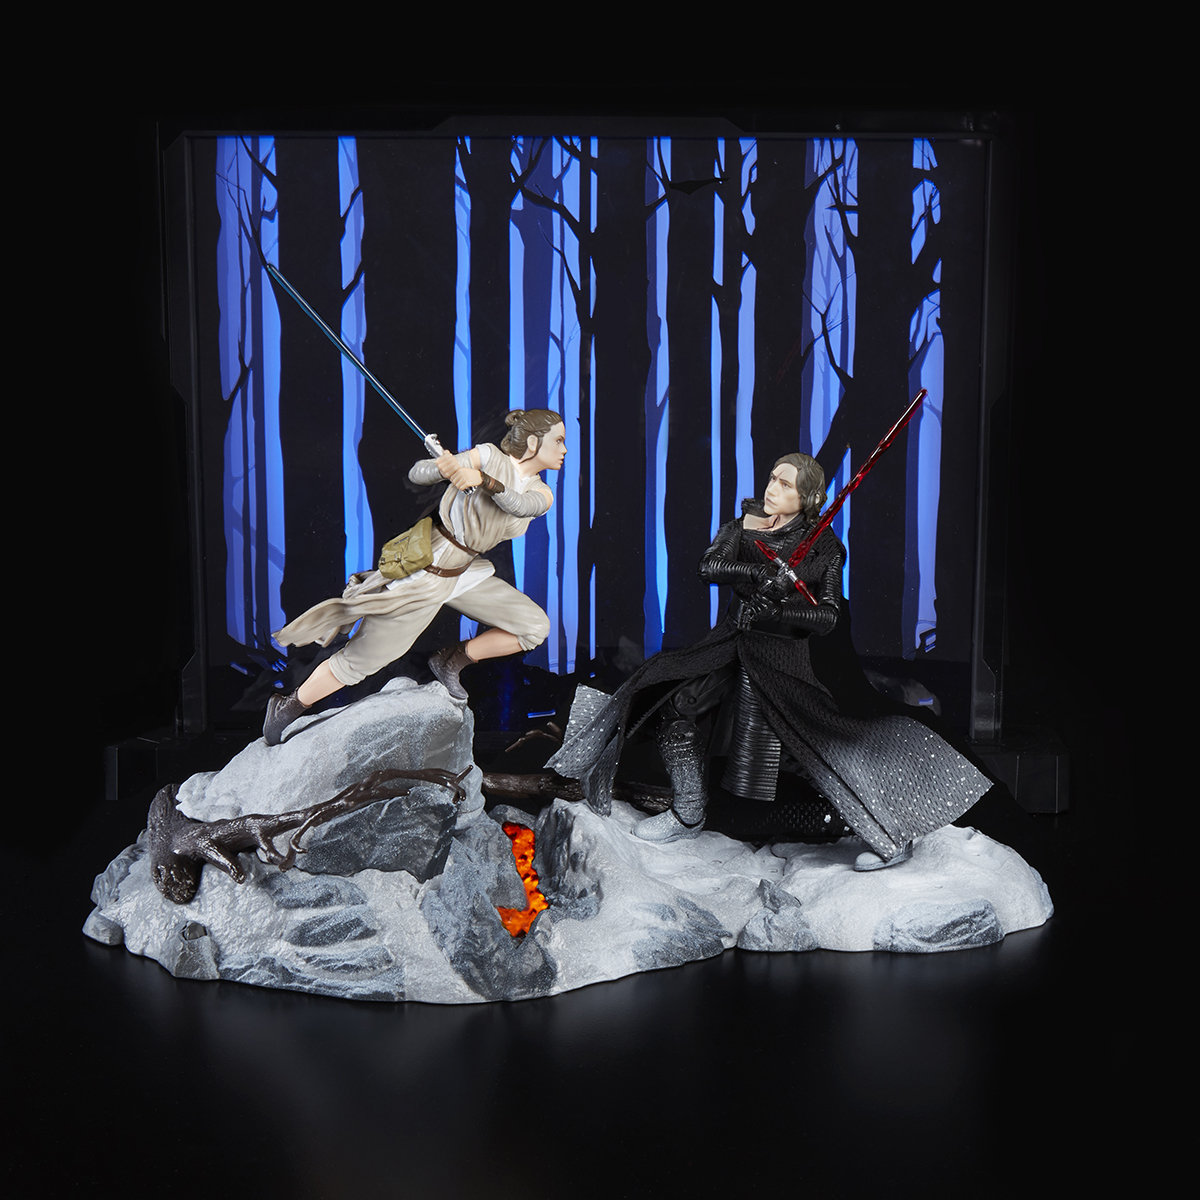 Star Wars: The Black Series Rey & Kylo Ren Centerpiece (Starkiller Base)